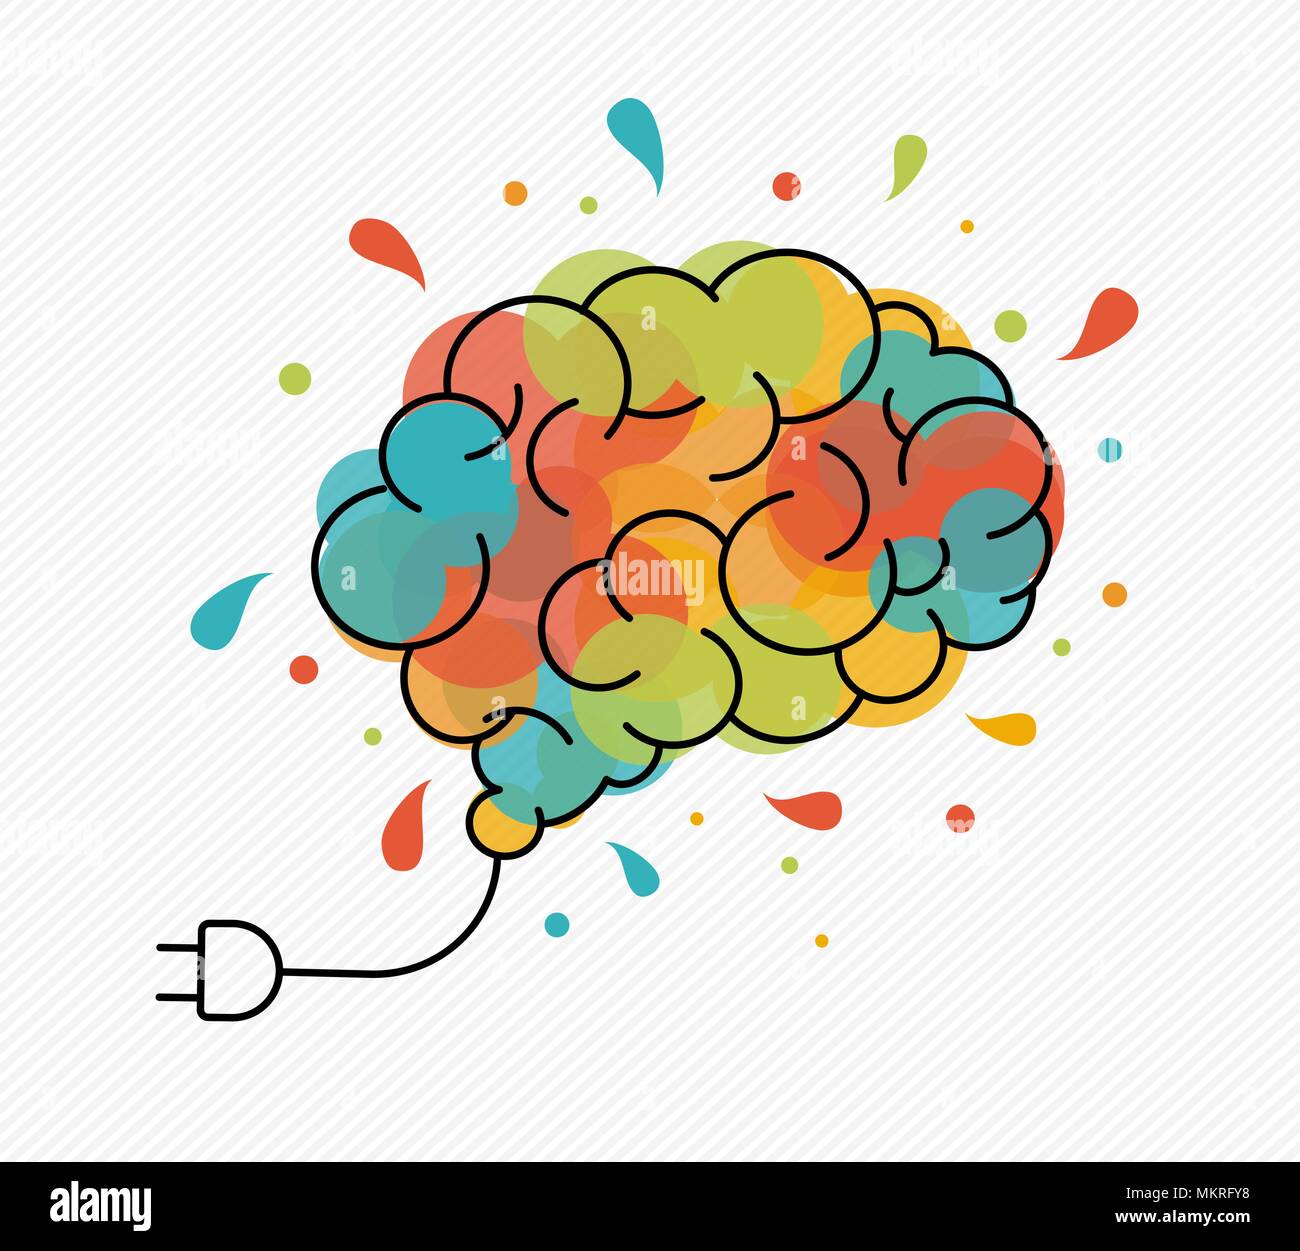 Immaginazione Creativa concetto illustrazione nella moderna progettazione di contorno con colorati cervello umano splash come lampadina elettrica. EPS10 vettore. Illustrazione Vettoriale